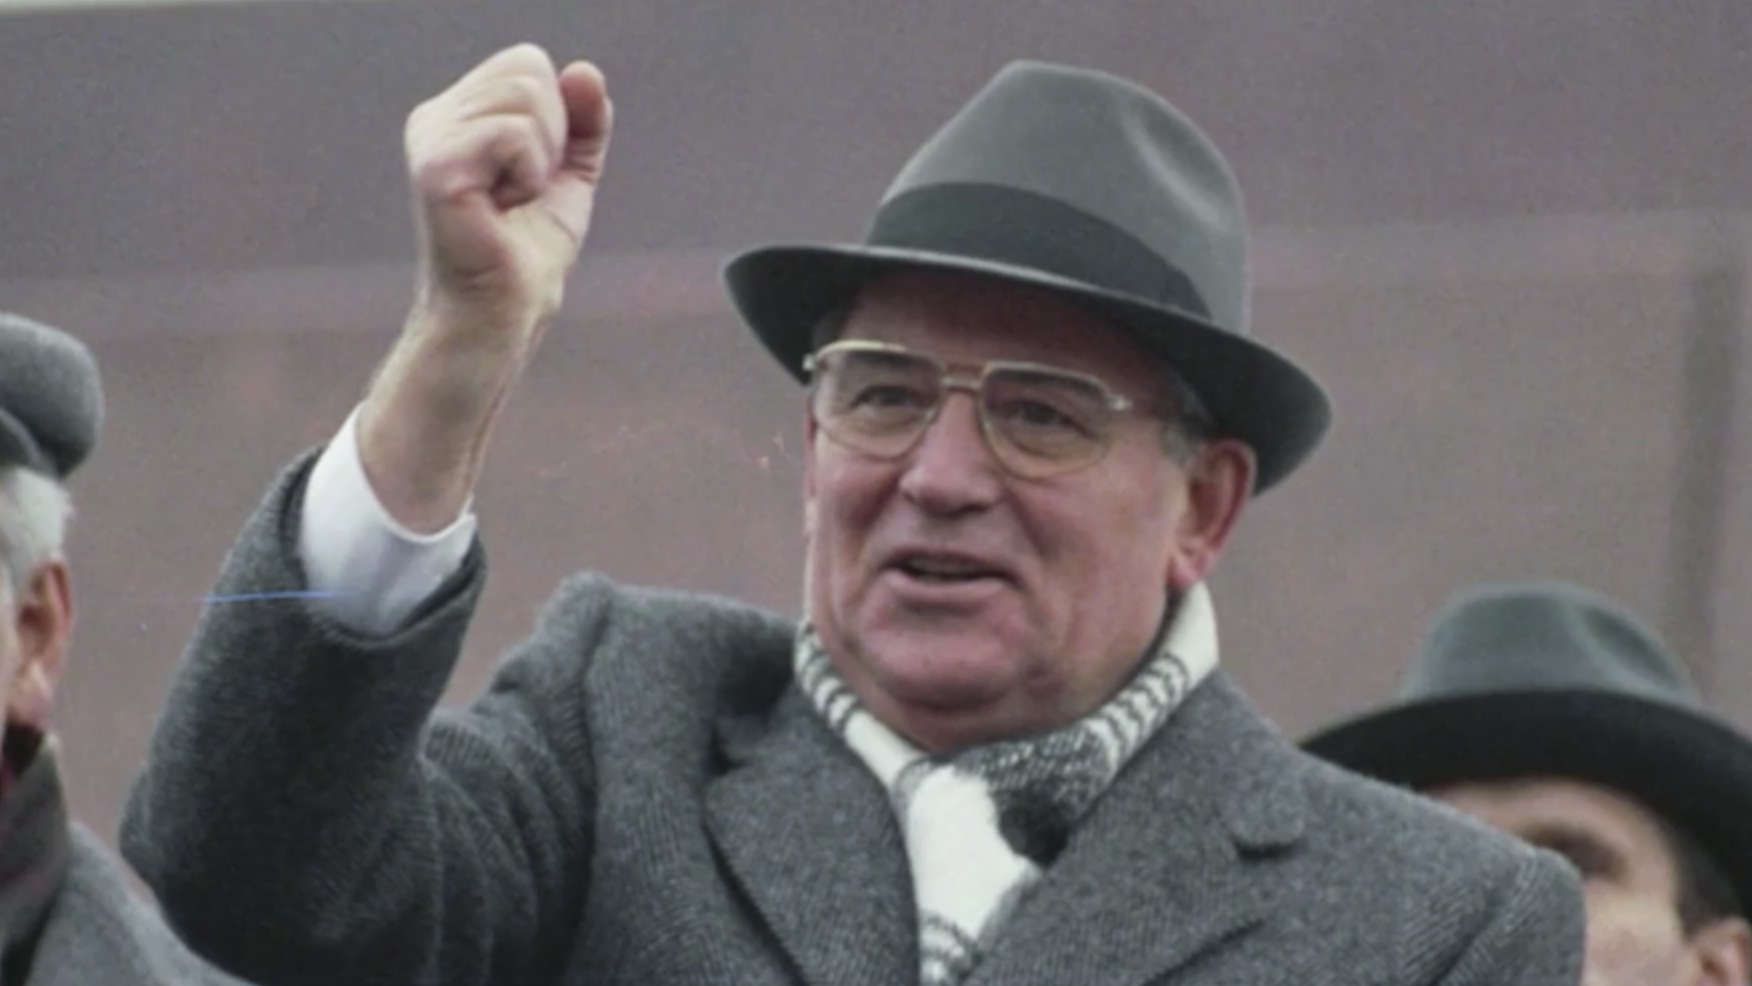 10 событий из жизни Горбачева в цитатах мировых политиков